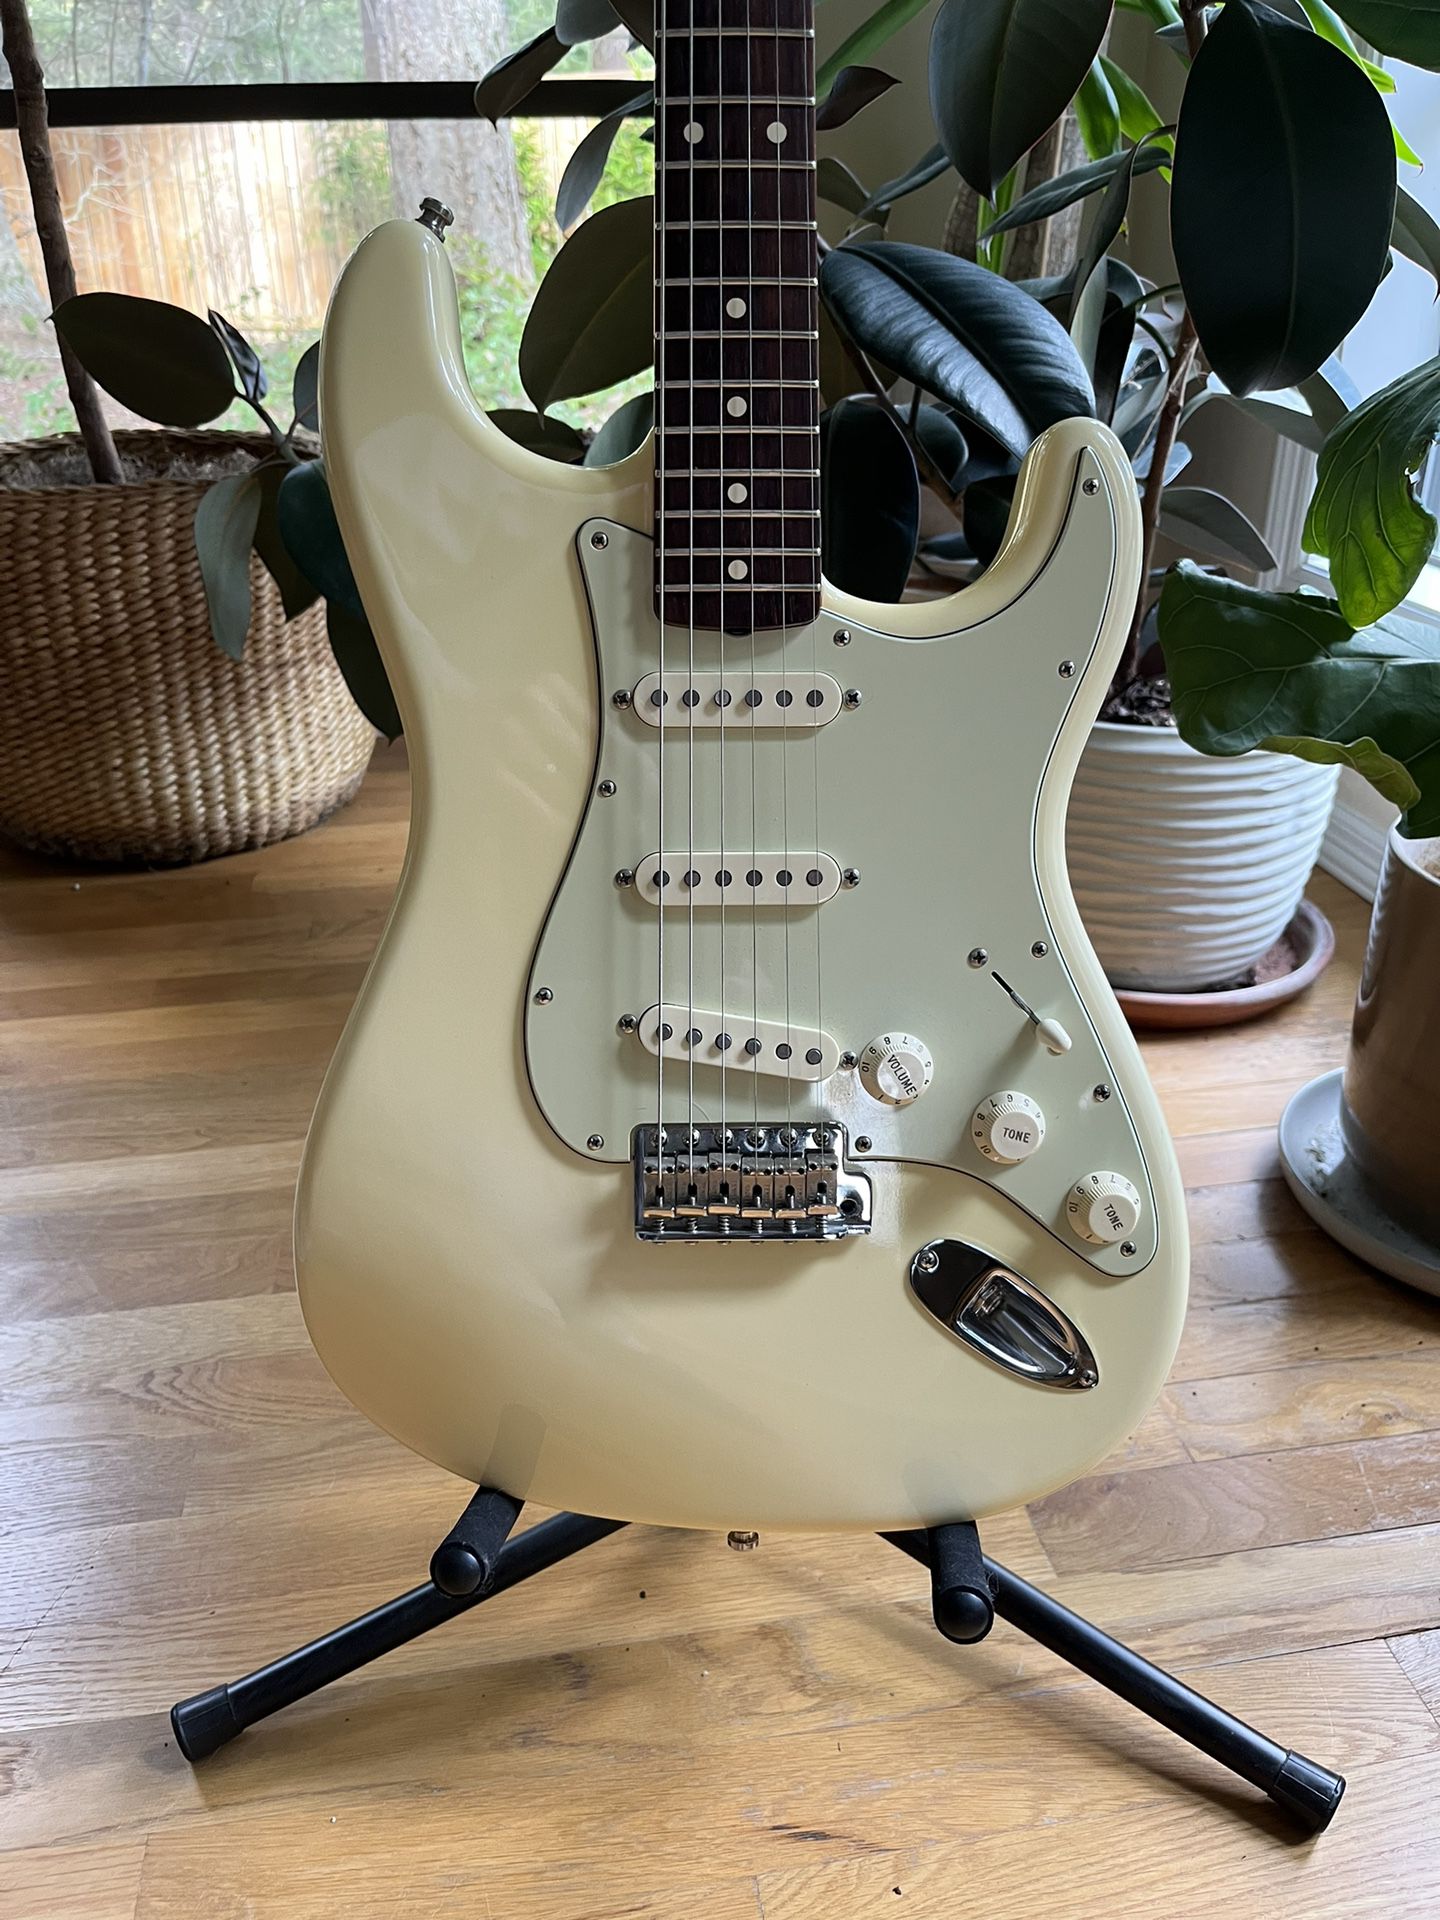 Fender '62 Hotrod Vintage Stratocaster Electric Guitar - Plek’d